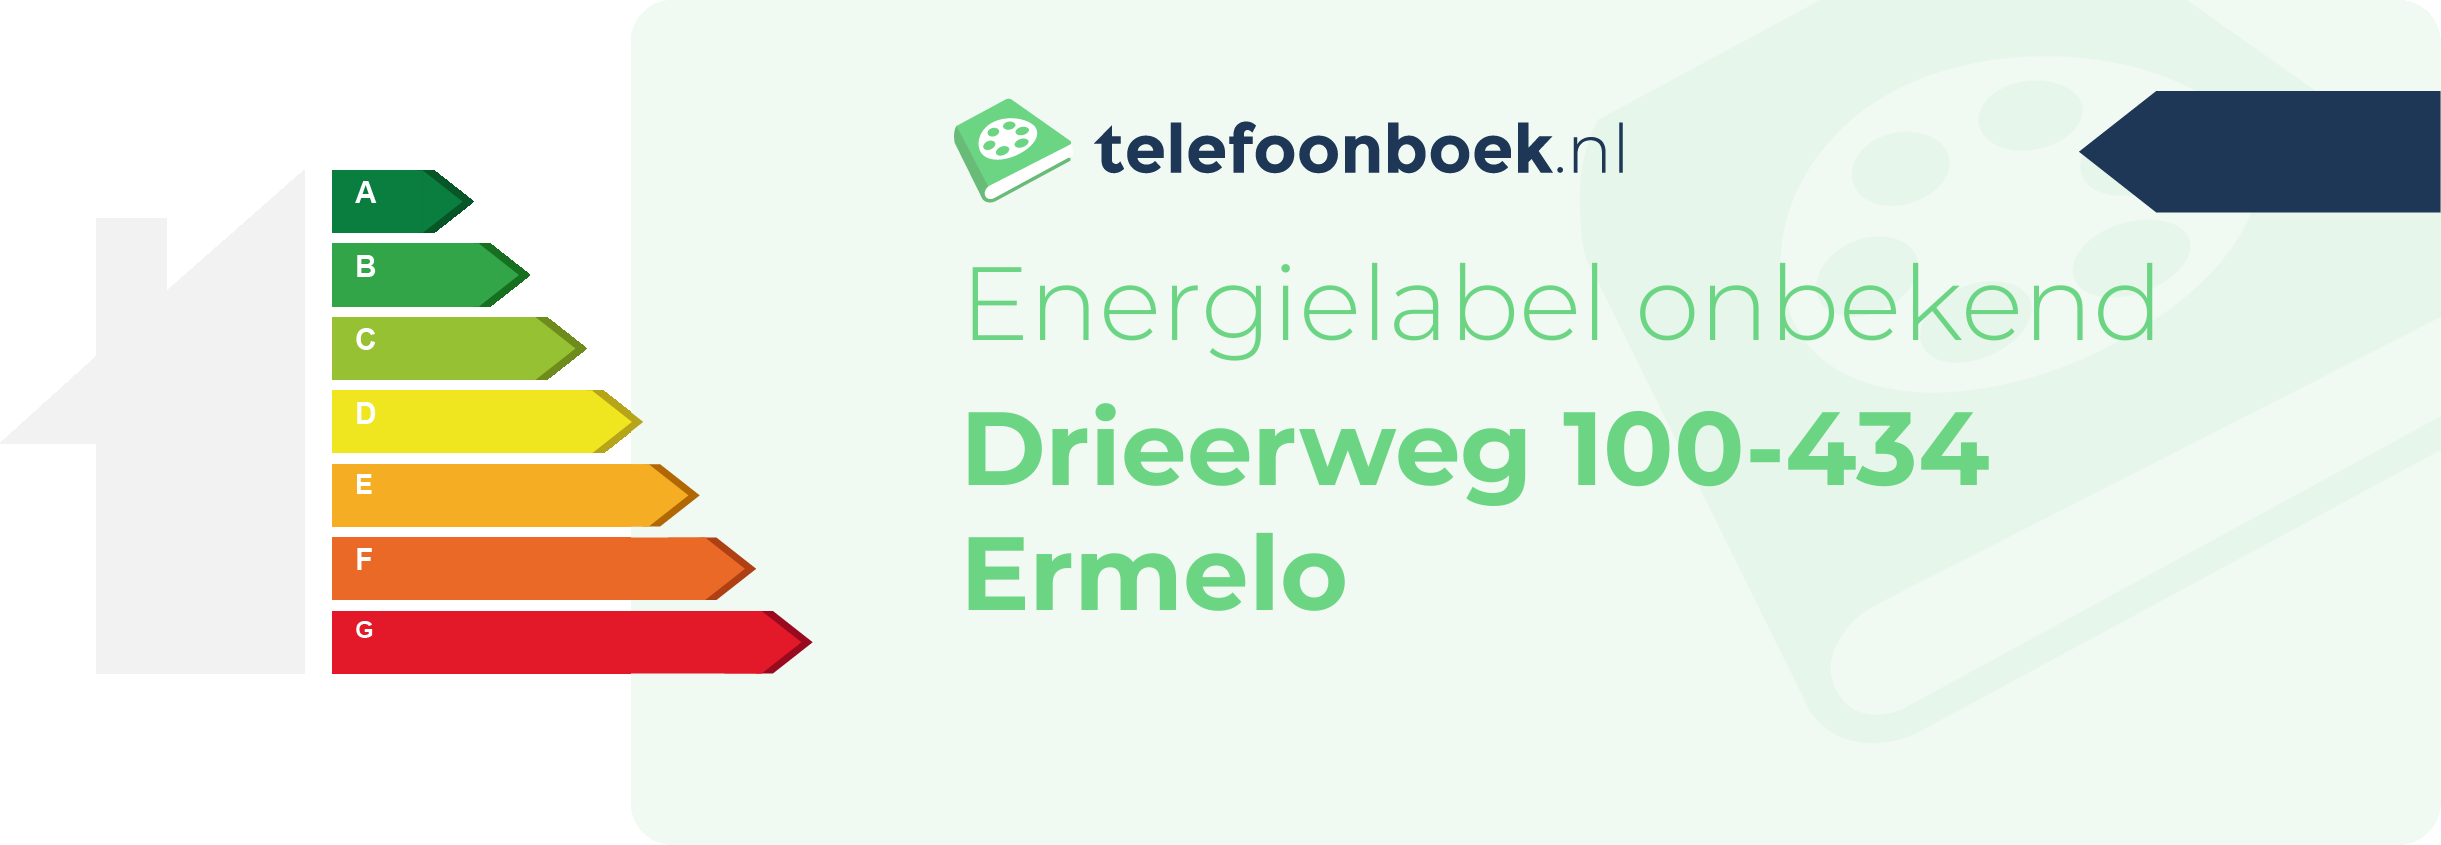 Energielabel Drieerweg 100-434 Ermelo